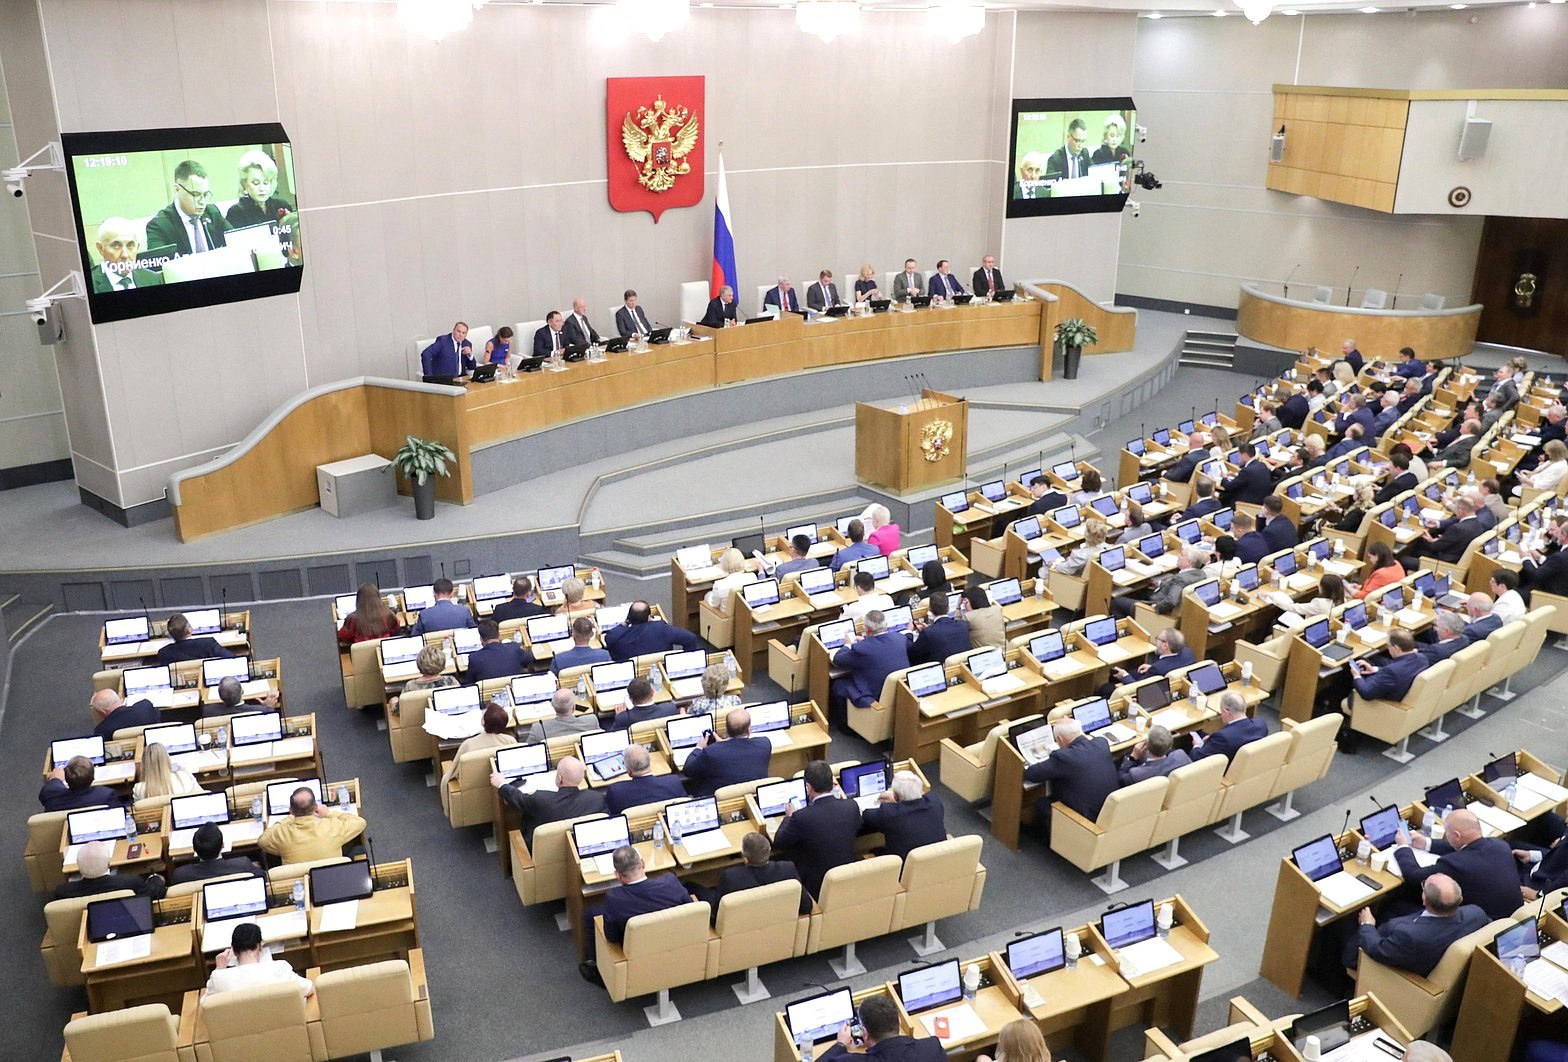 Duma Ukraynanın 4 regionunun Rusiyaya birləşdirilməsi ilə bağlı qanunu ratifikasiya etdi